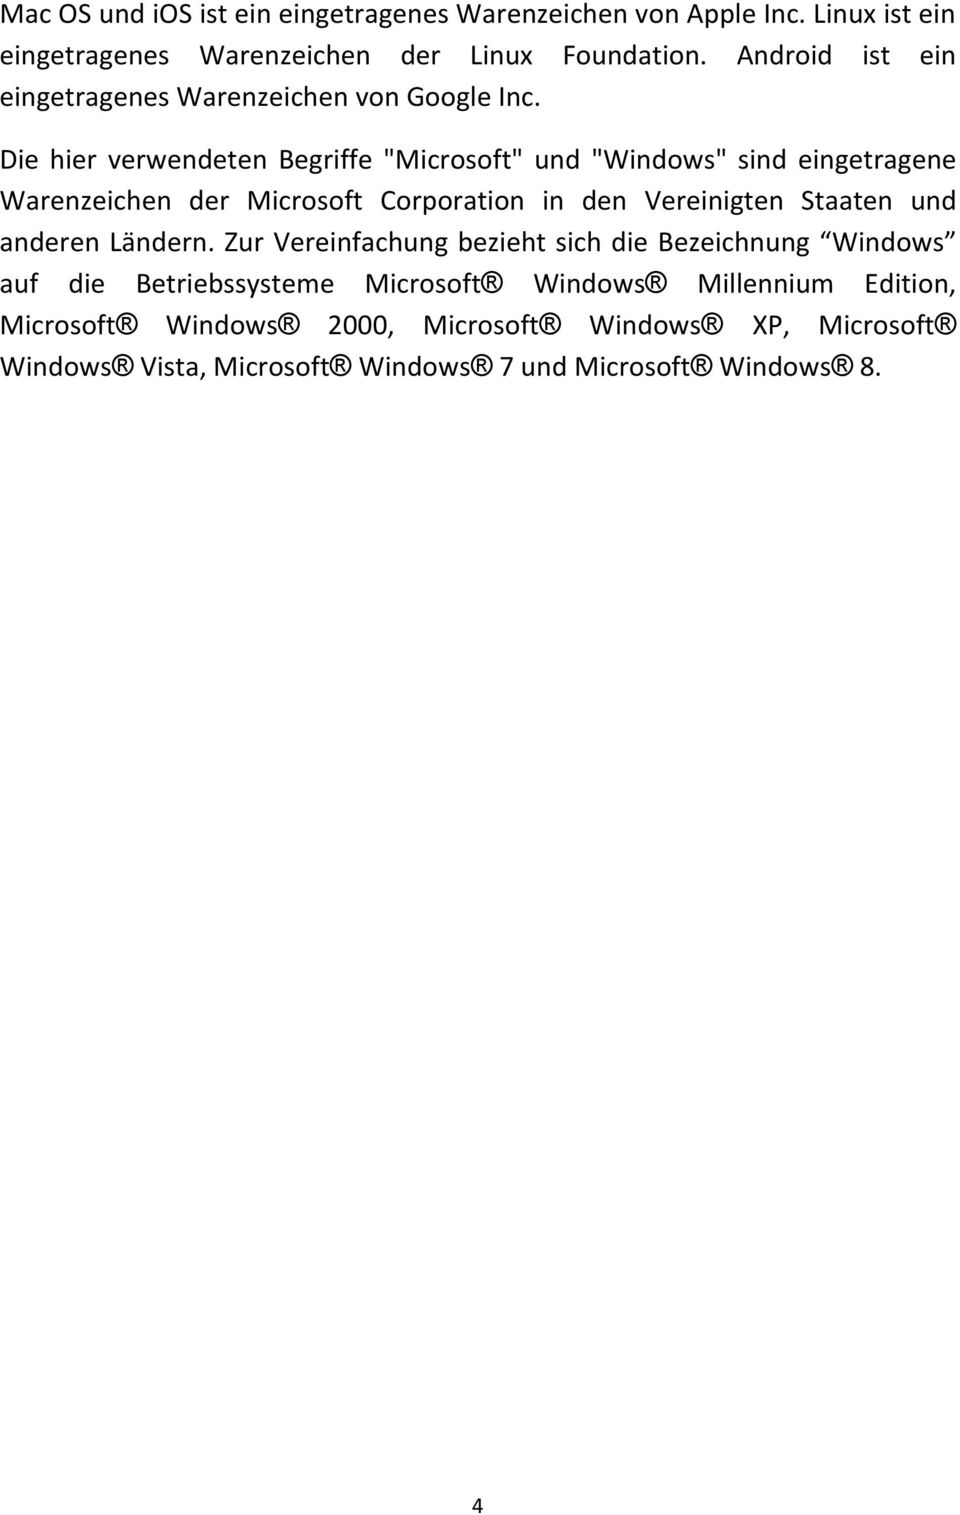 Die hier verwendeten Begriffe "Microsoft" und "Windows" sind eingetragene Warenzeichen der Microsoft Corporation in den Vereinigten Staaten und